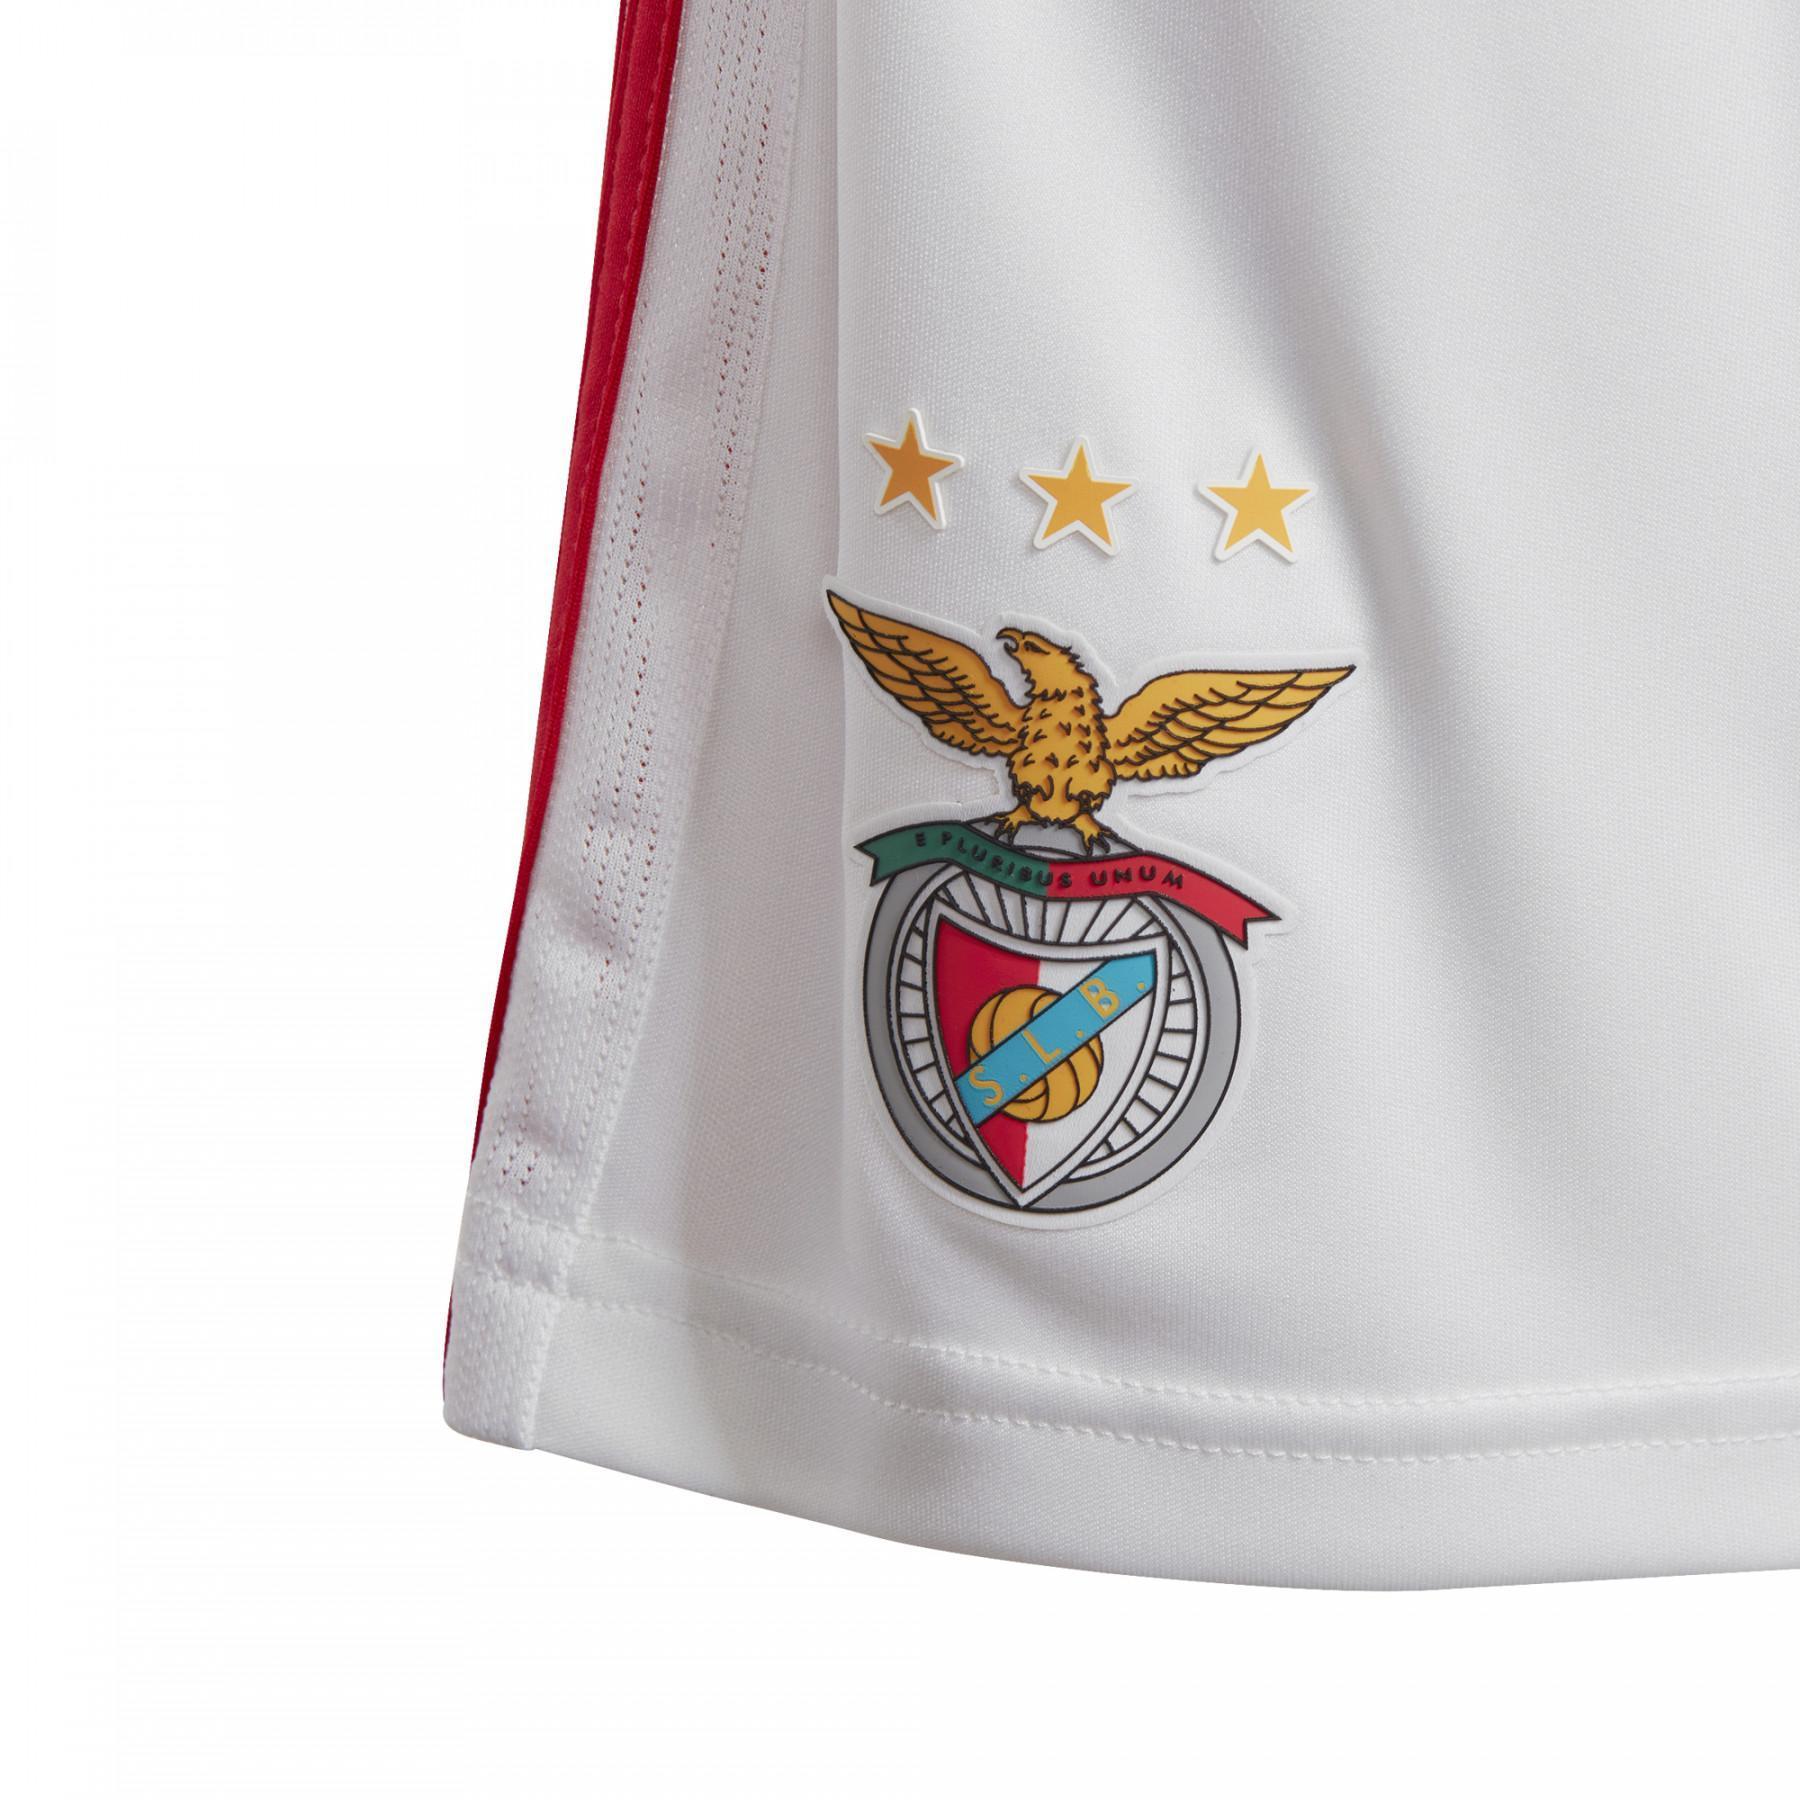 Mini-kit domicile Benfica 2019/20